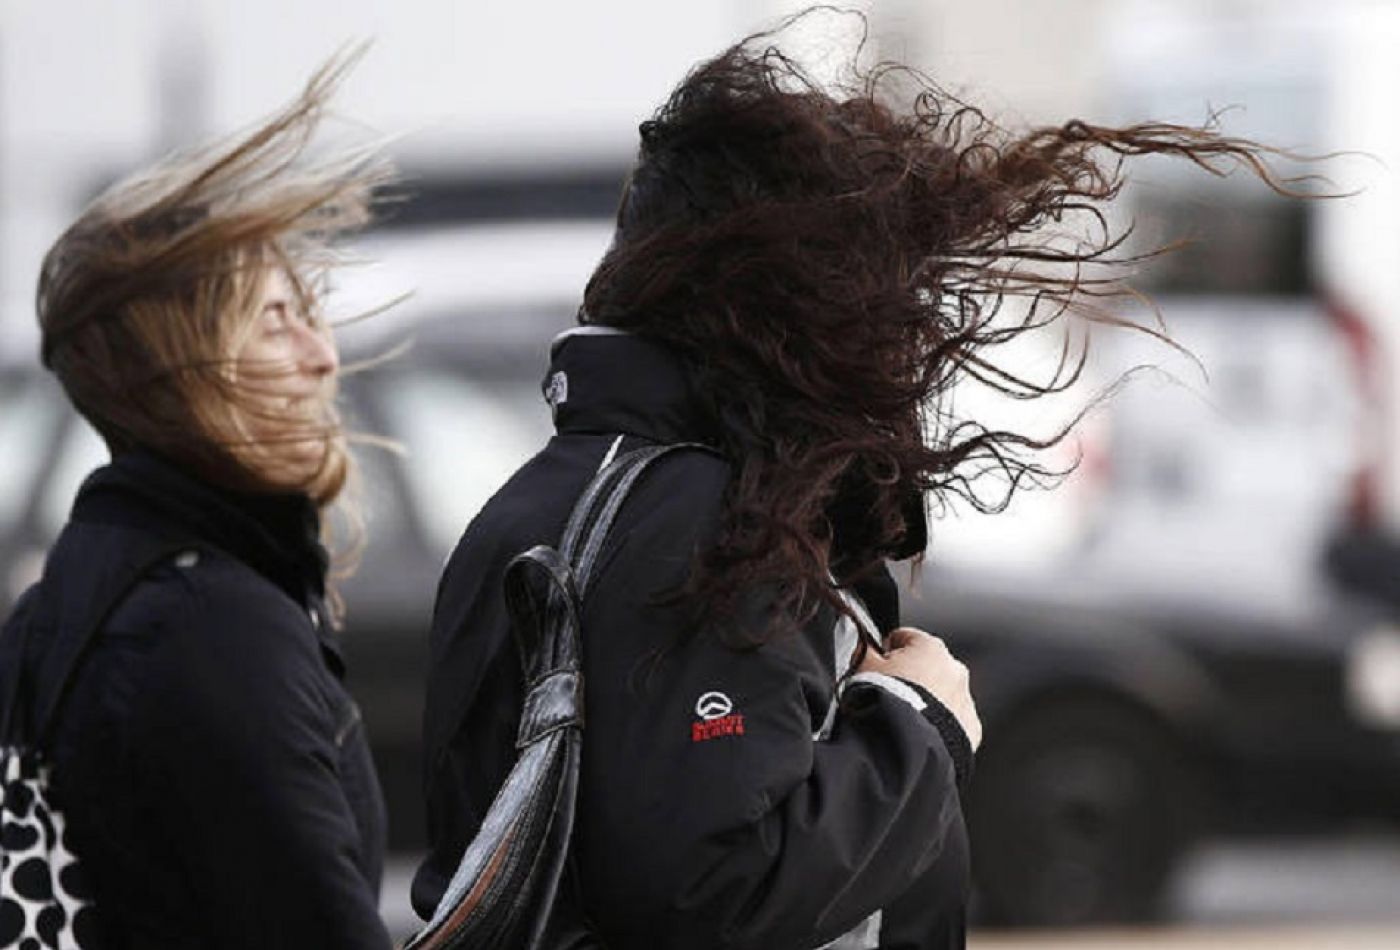 Alerta Amarilla por vientos fuertes en la provincia de Tierra del Fuego